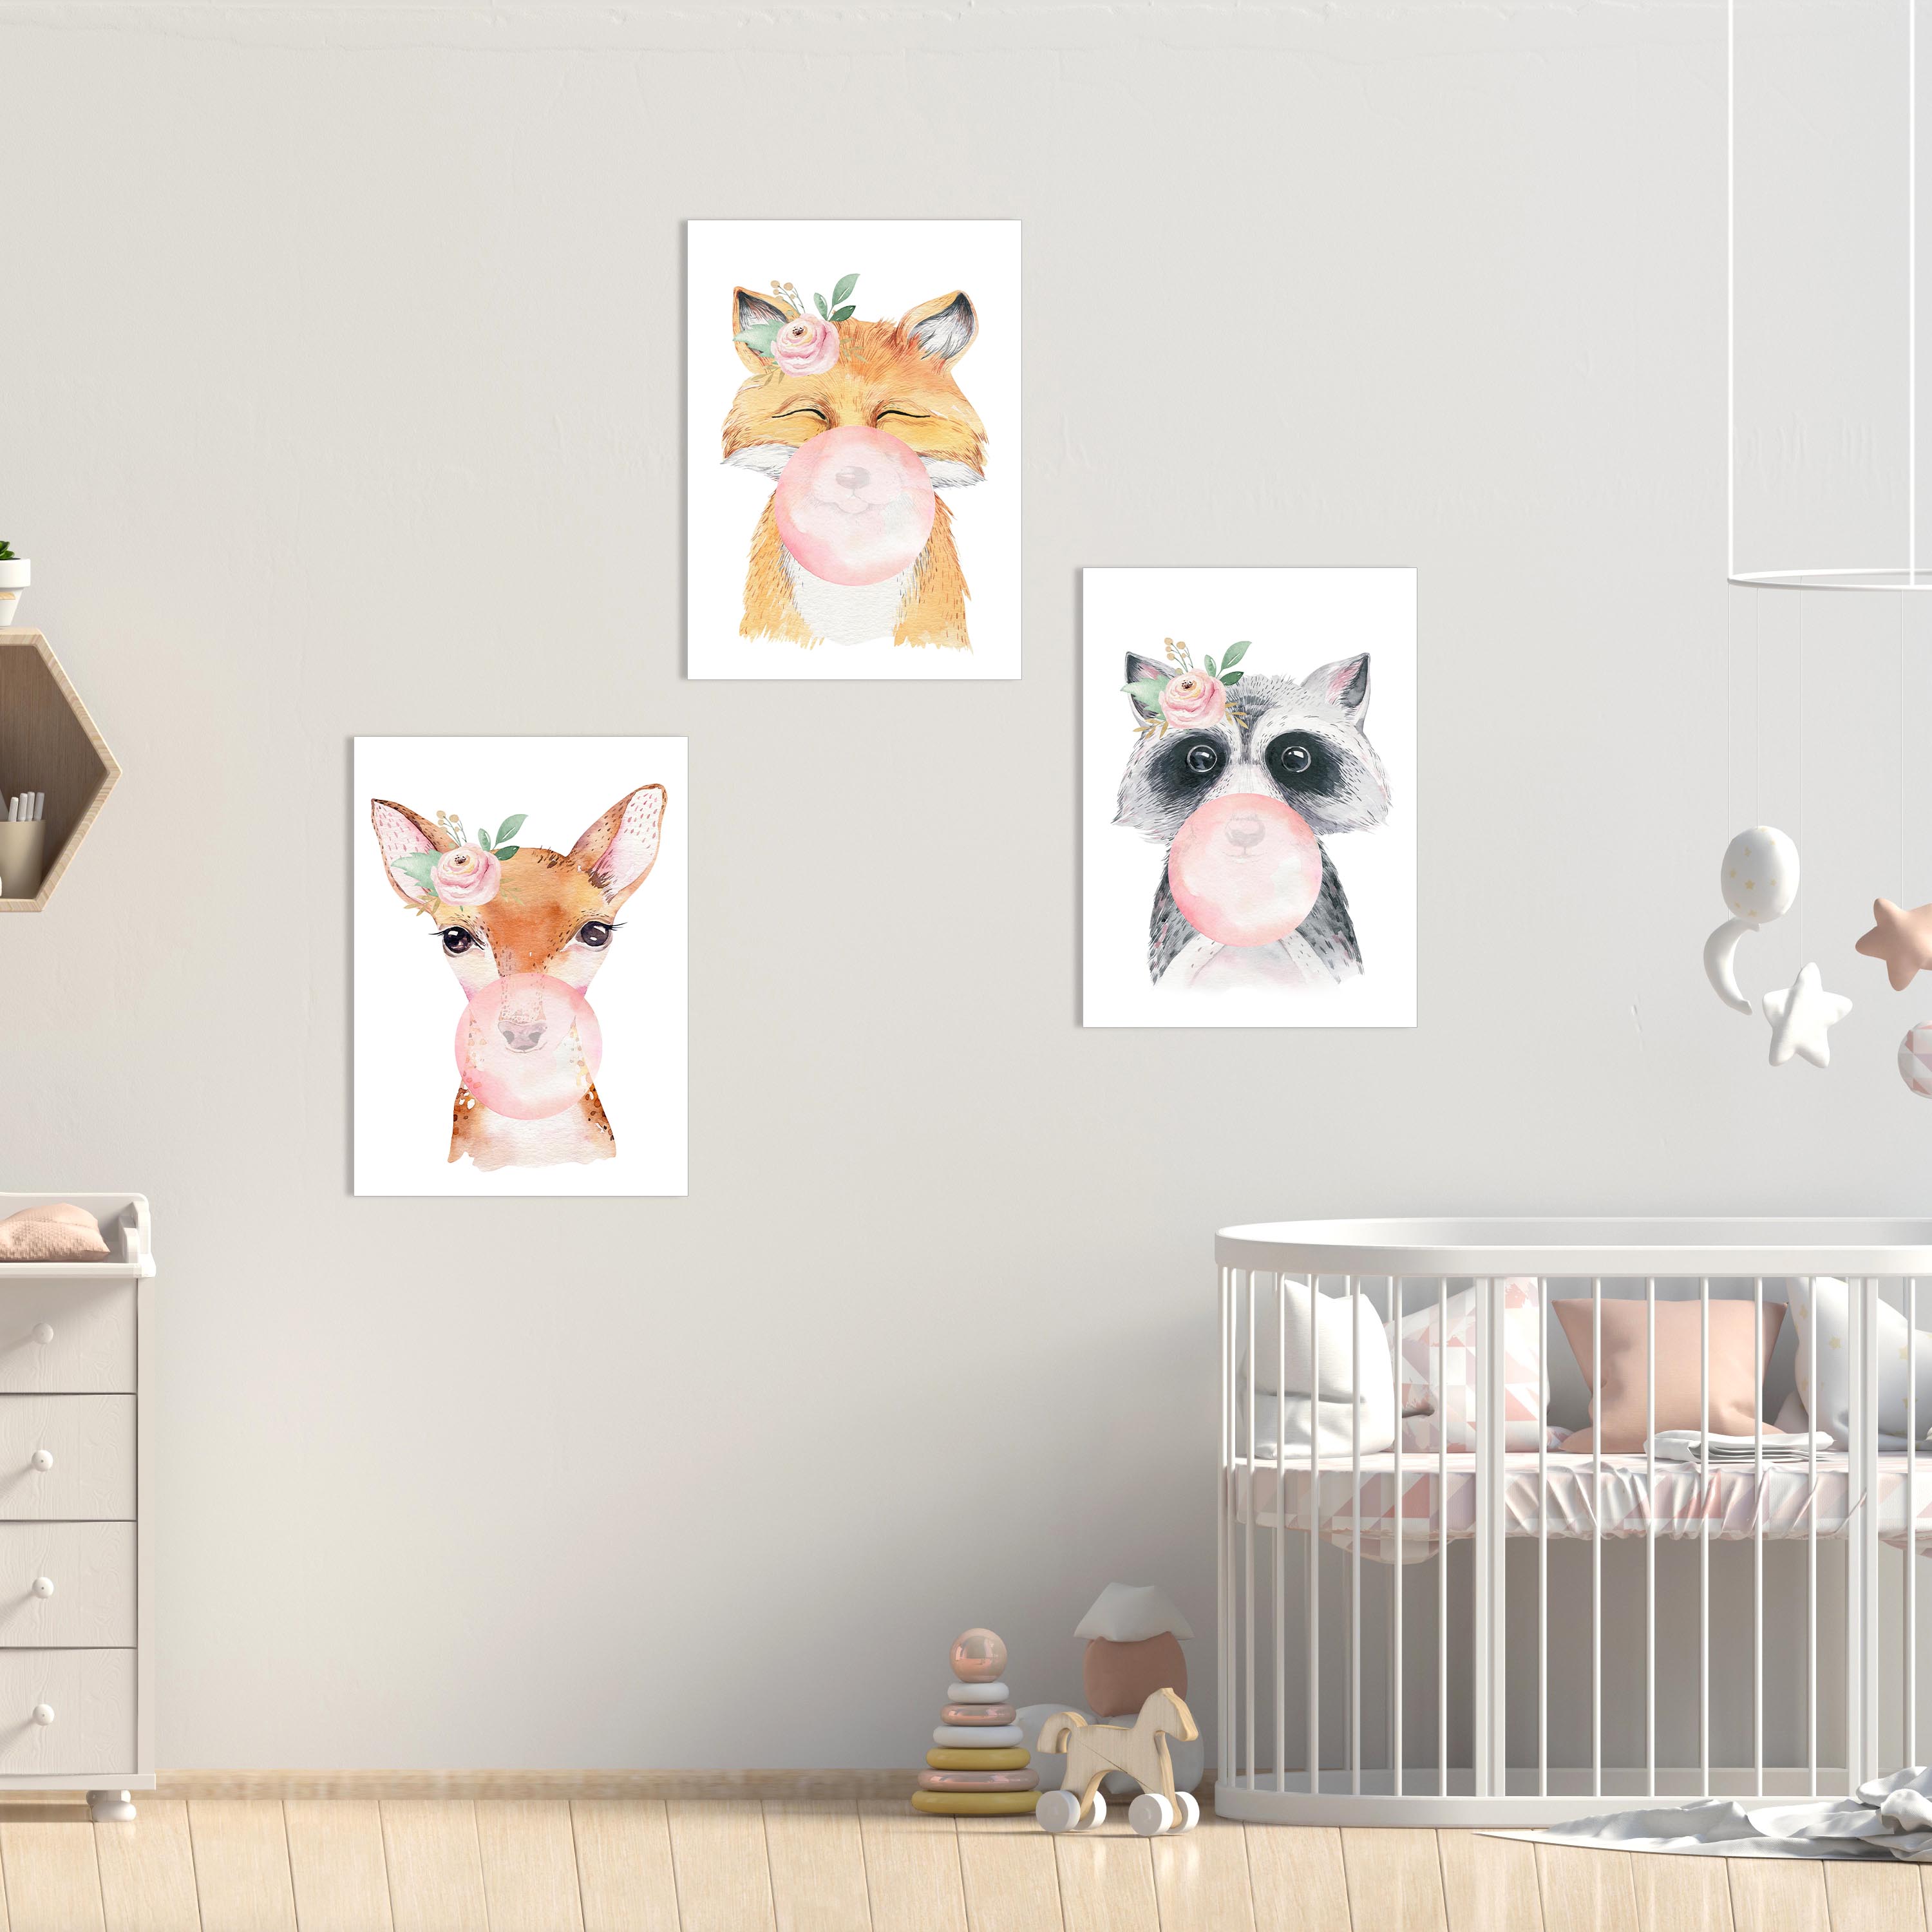 3er Set Bilder Kinderzimmer - Babyzimmer deko  - Premium A4 Poster Papier Matt - Bilder Set Mädchen Junge Deko Wandbilder kinderbilder Tiere Wanddeko